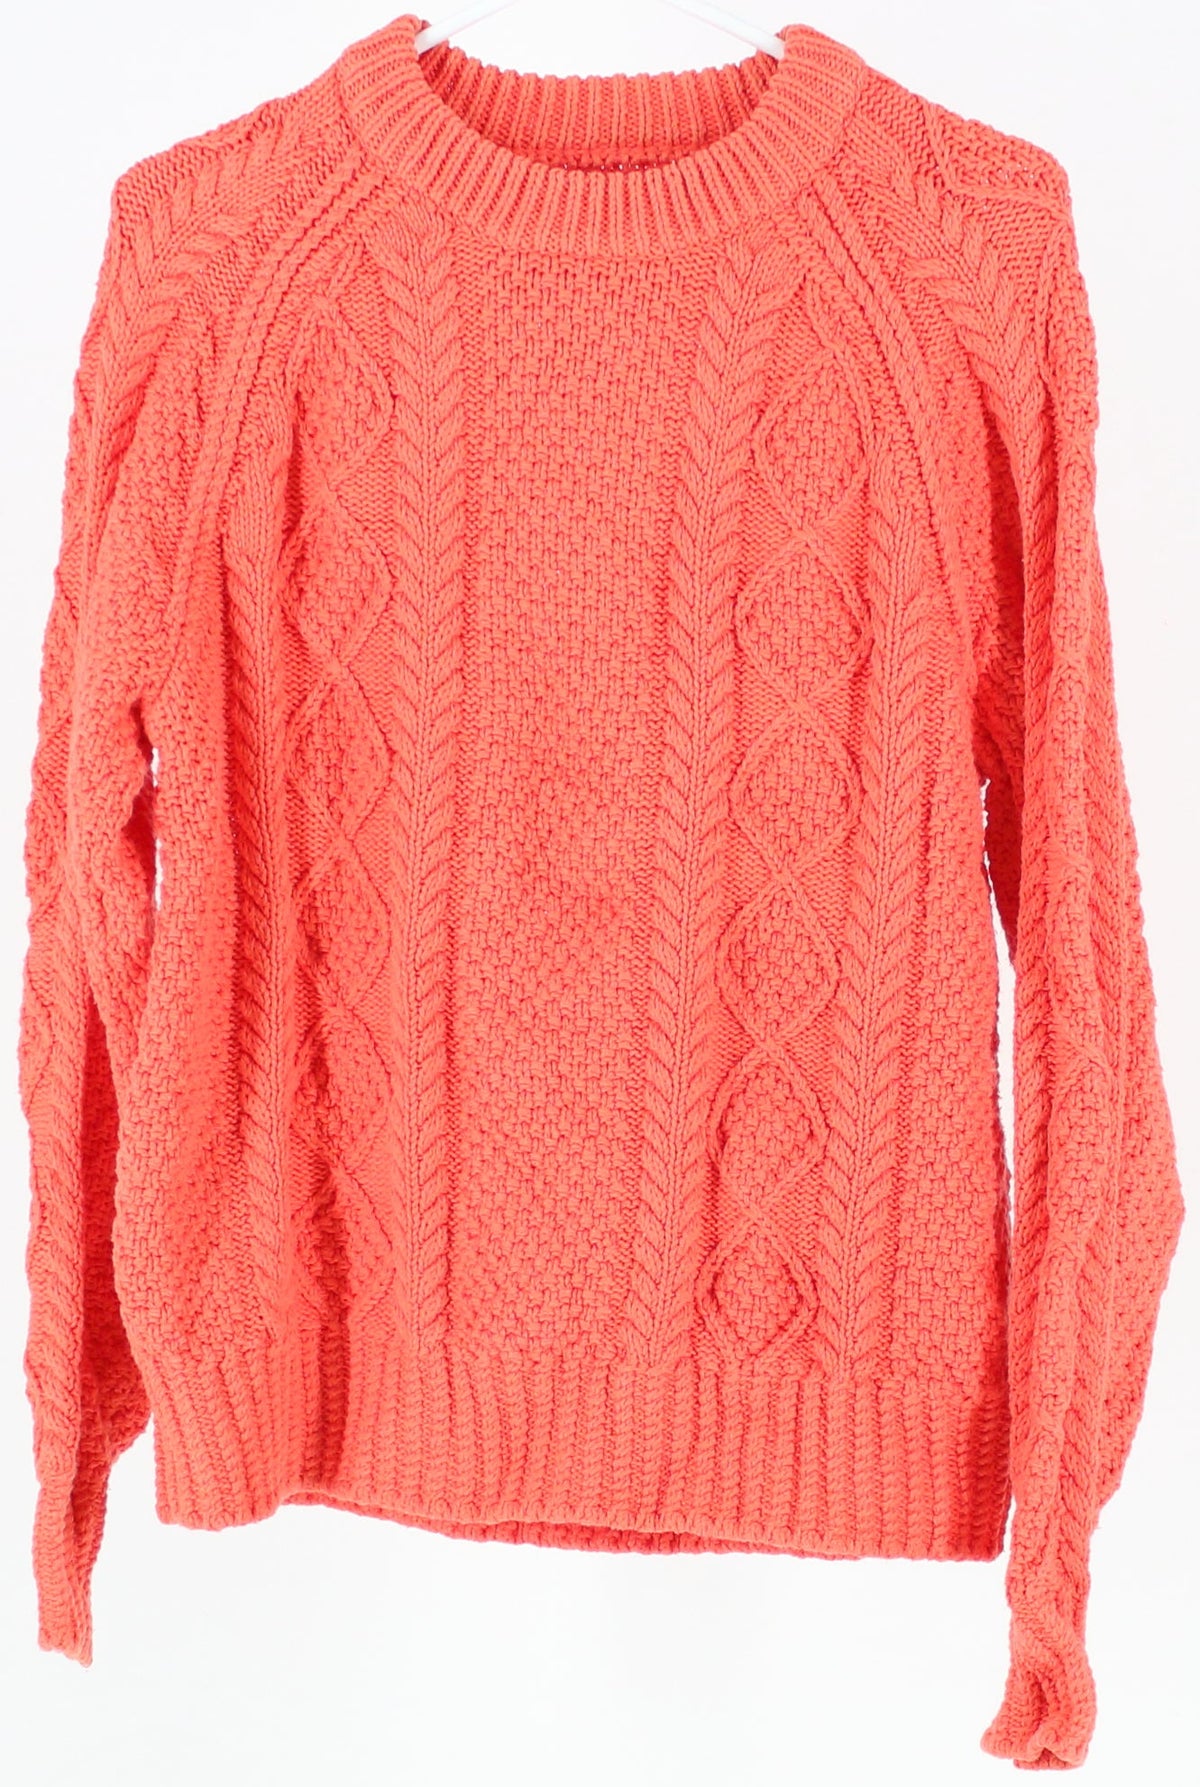 L.L.Bean Signature Orange Sweater